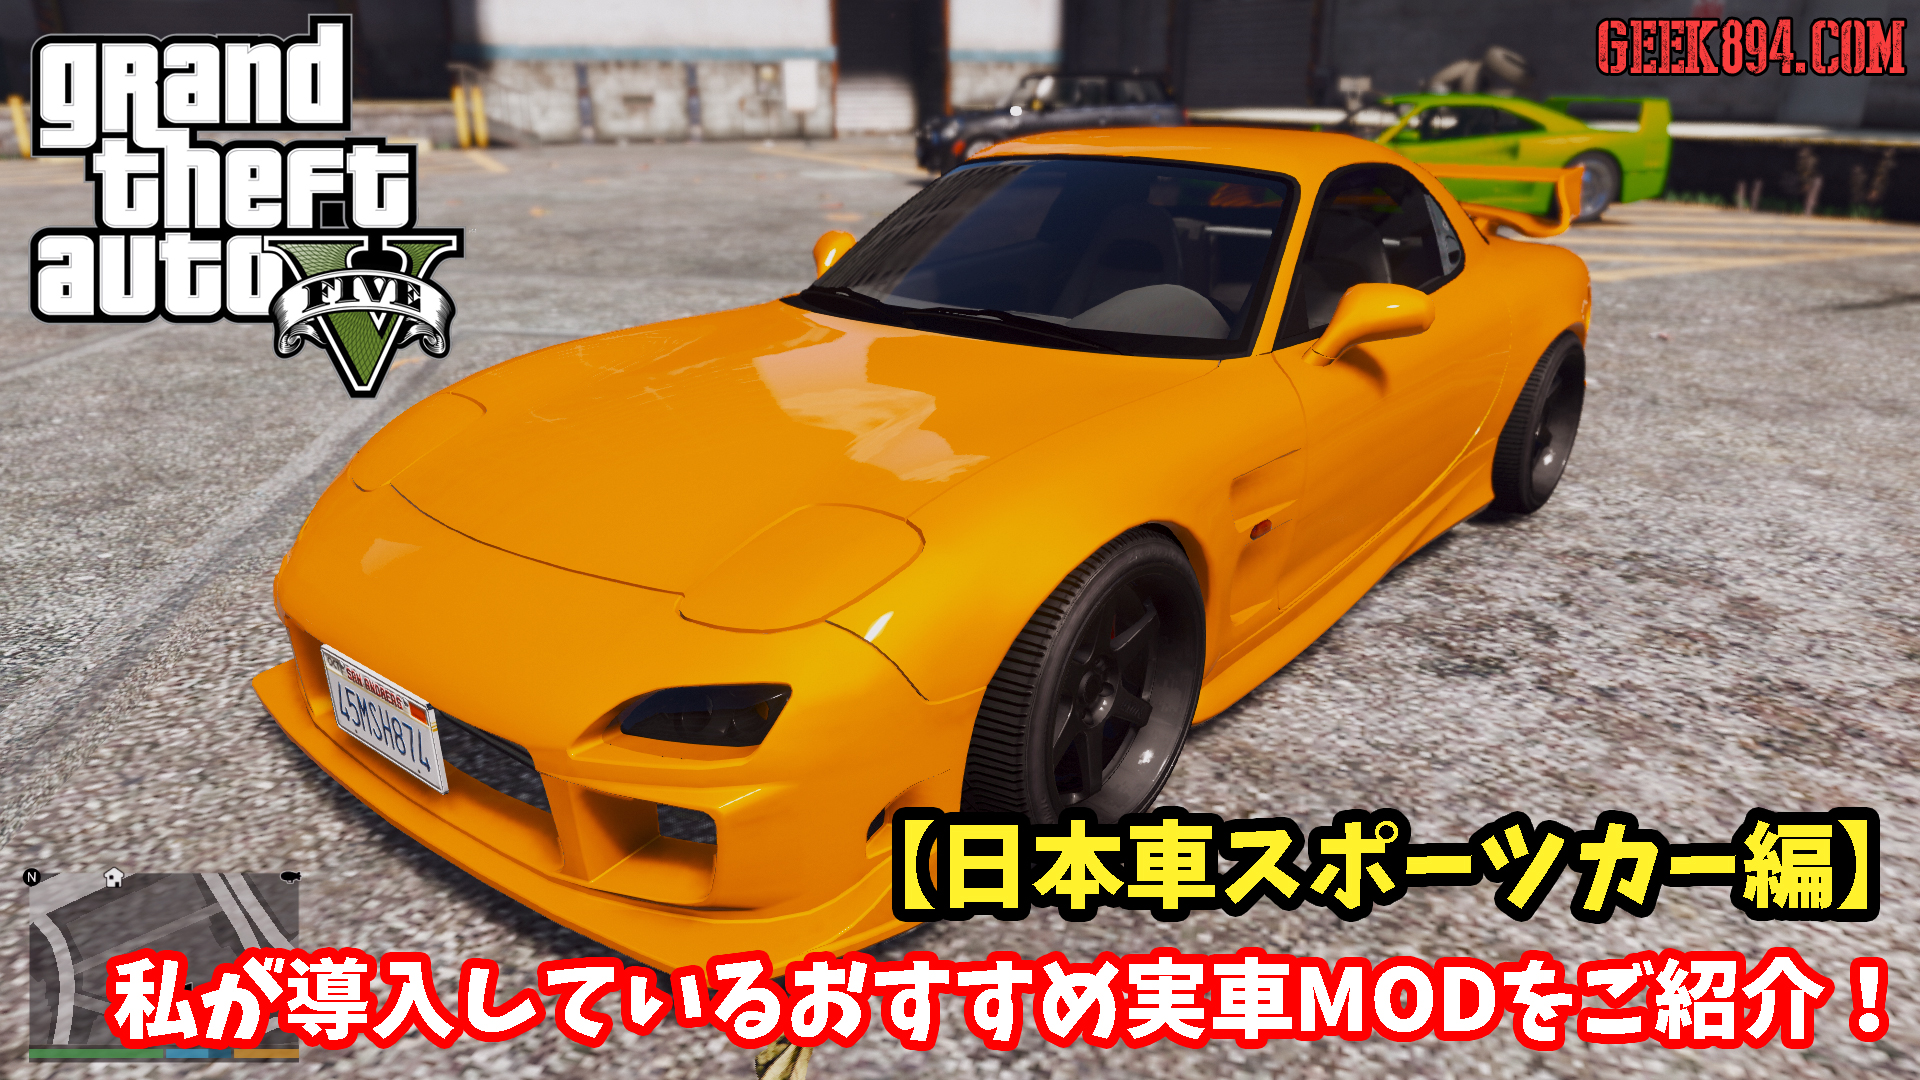 私が導入しているおすすめ実車modをご紹介 日本車スポーツカー編 Geek894 Com